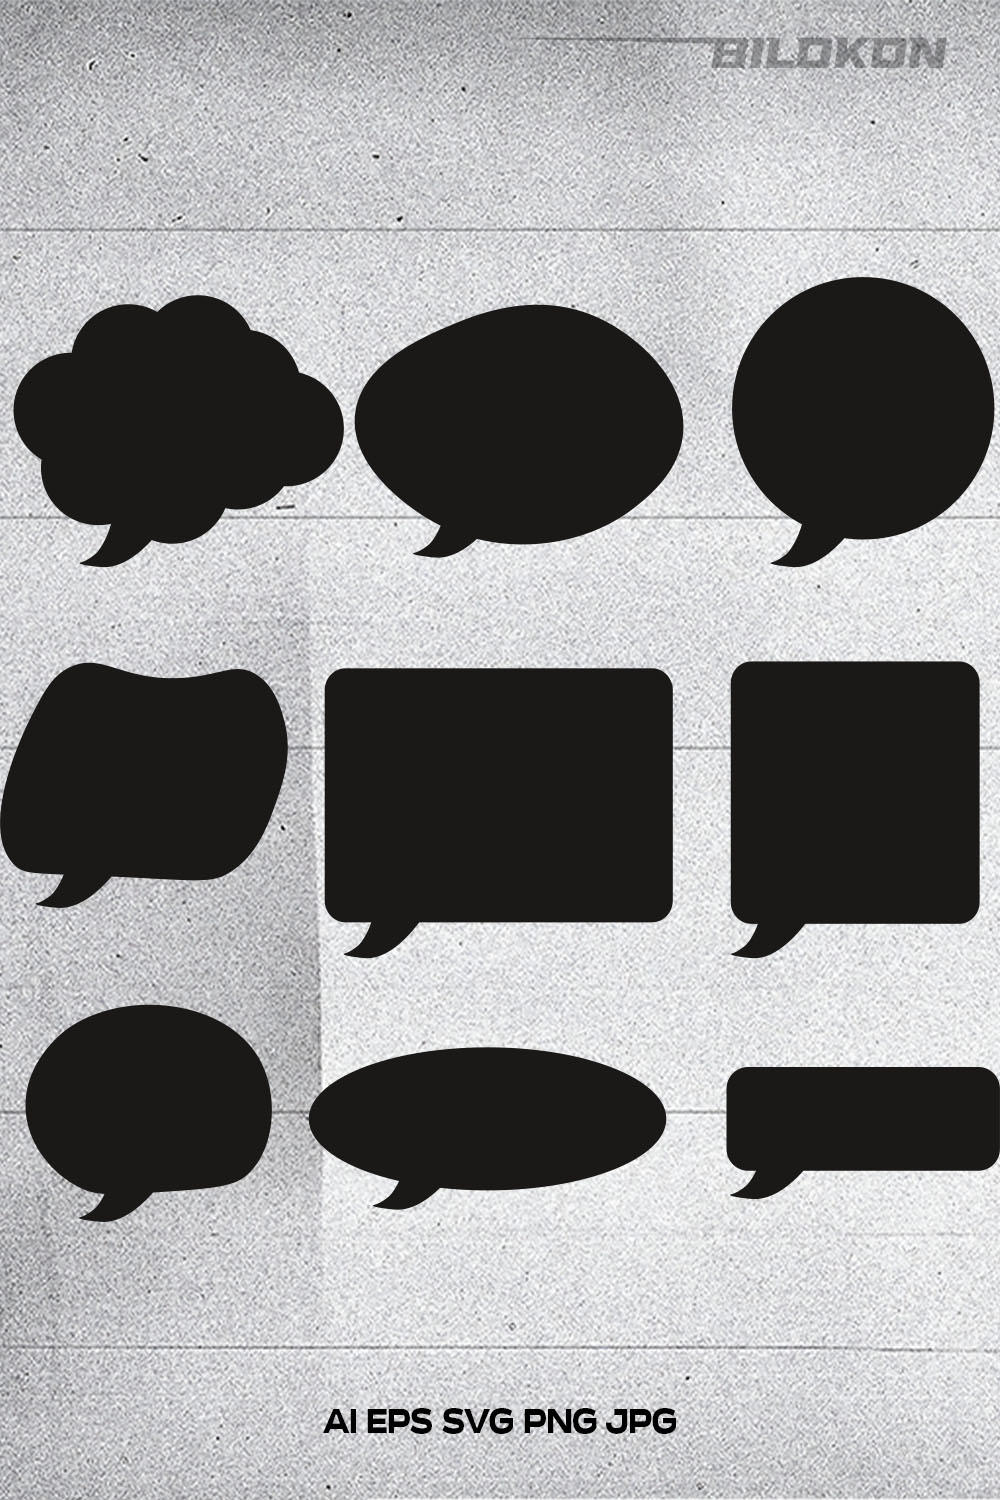 Speech bubble set icon, Talk bubble, Cloud speech bubble, SVG Vector pinterest preview image.